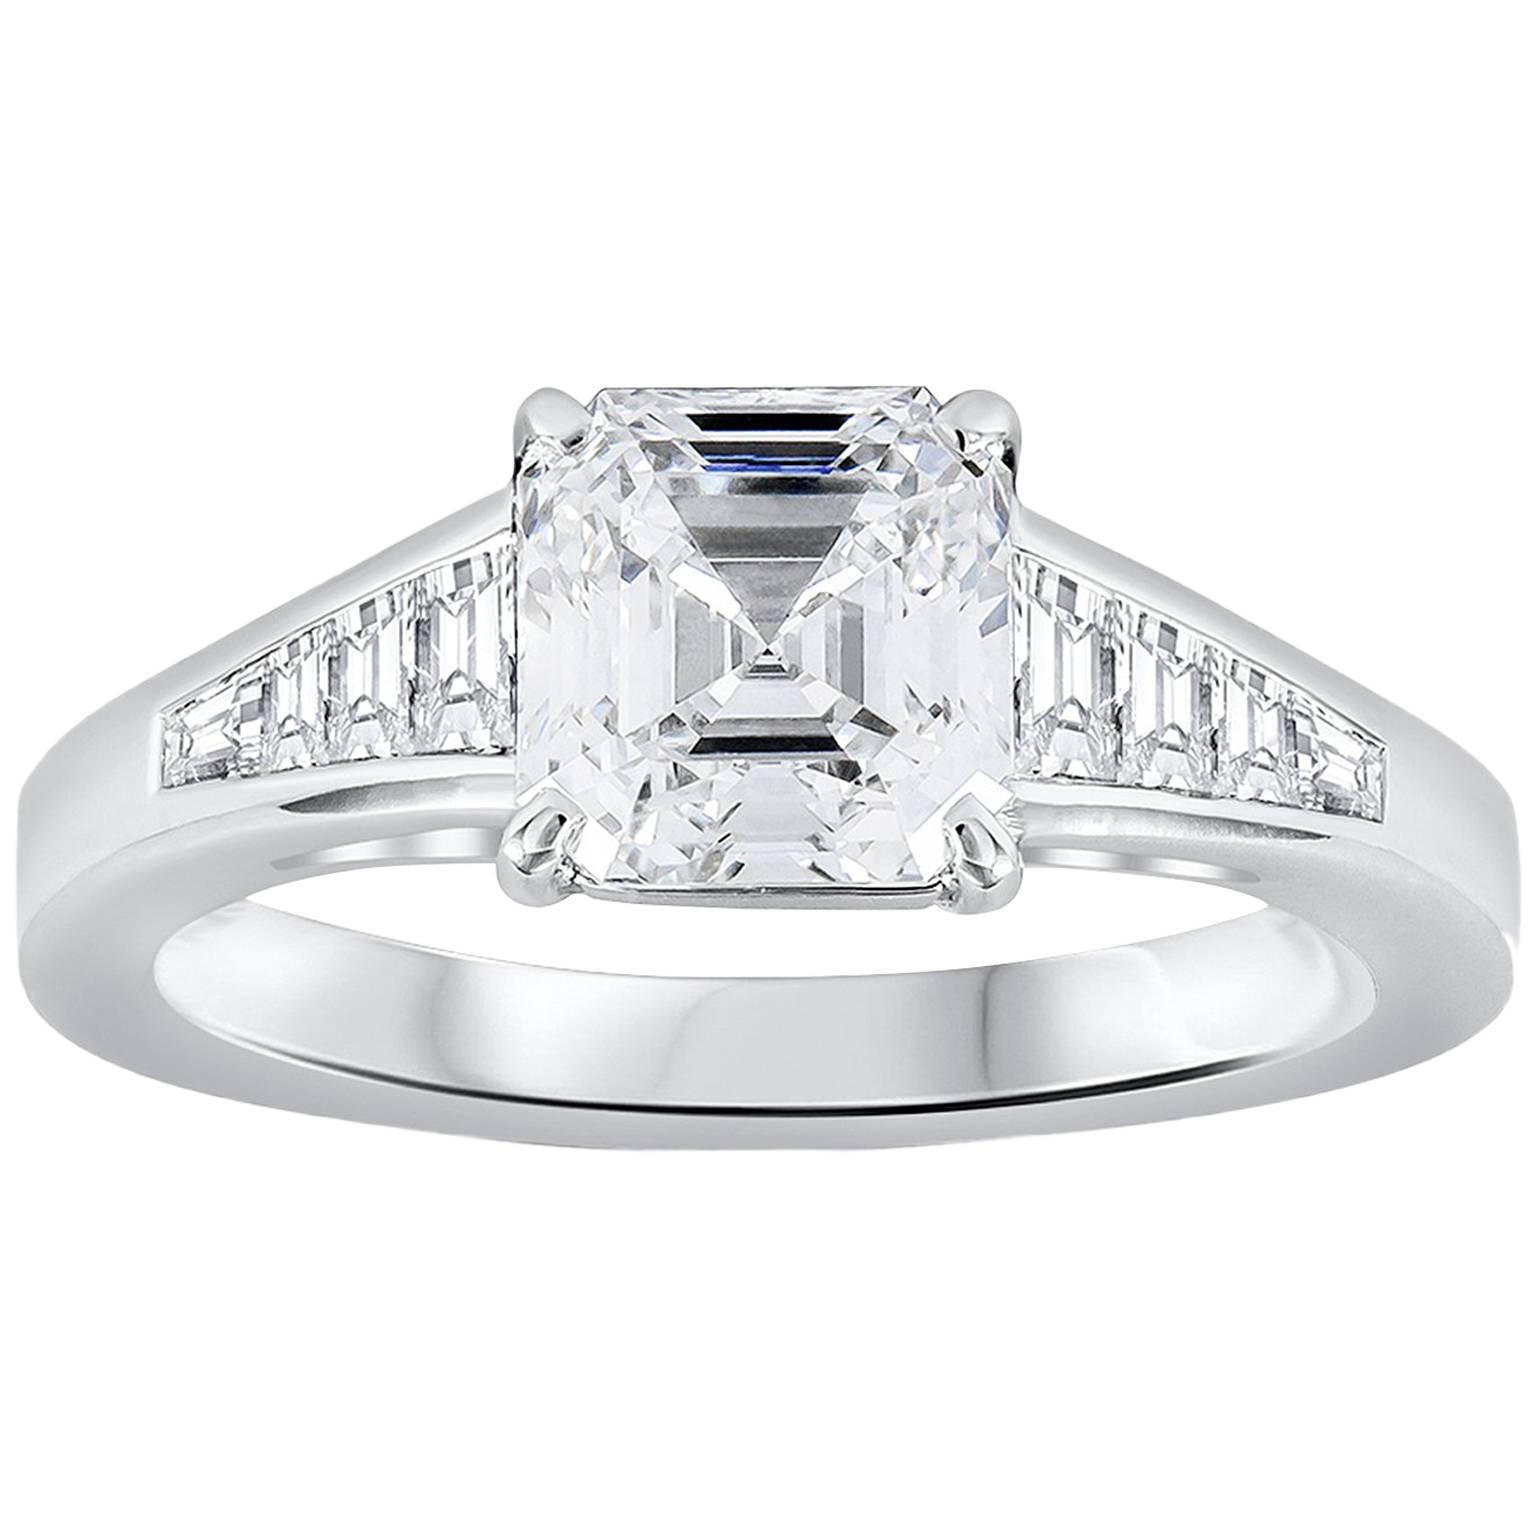 Verfügt über einen 1,56 Karat asscher cut Diamant, dass GIA zertifiziert als E Farbe, VS1 in Klarheit. Der zentrale Diamant wird von 0,40 Karat Baguette-Diamanten flankiert, die in einer polierten Platinkomposition gefasst sind. Ein wunderschönes